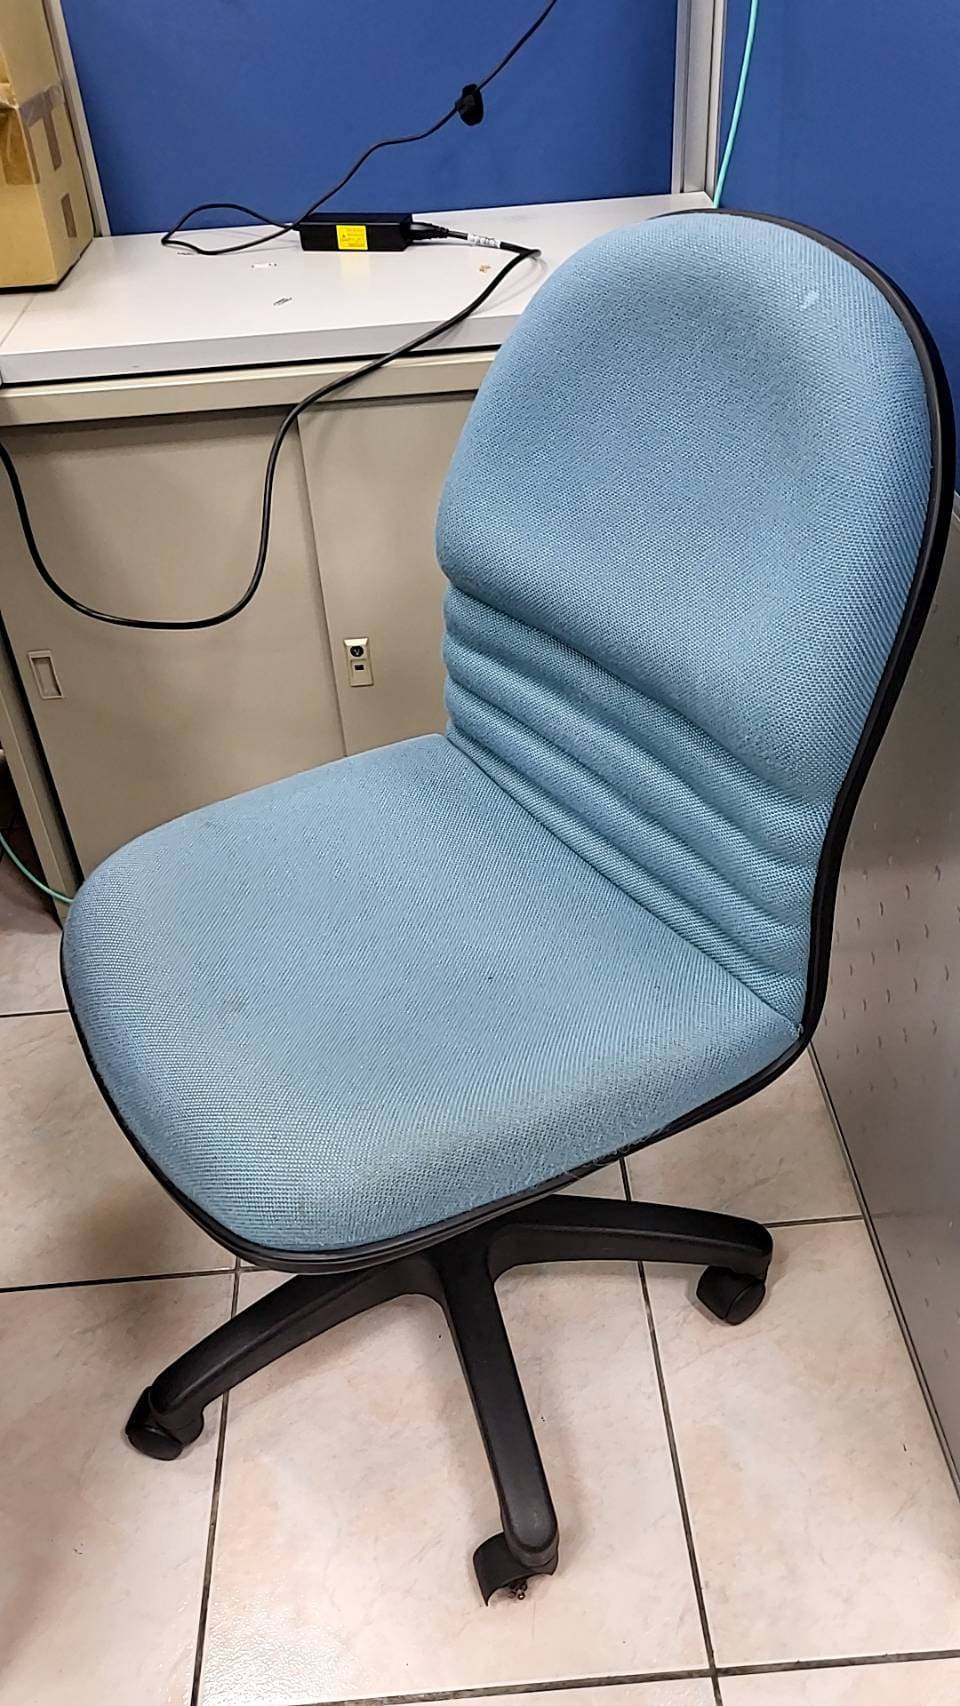 電腦椅汰換流程